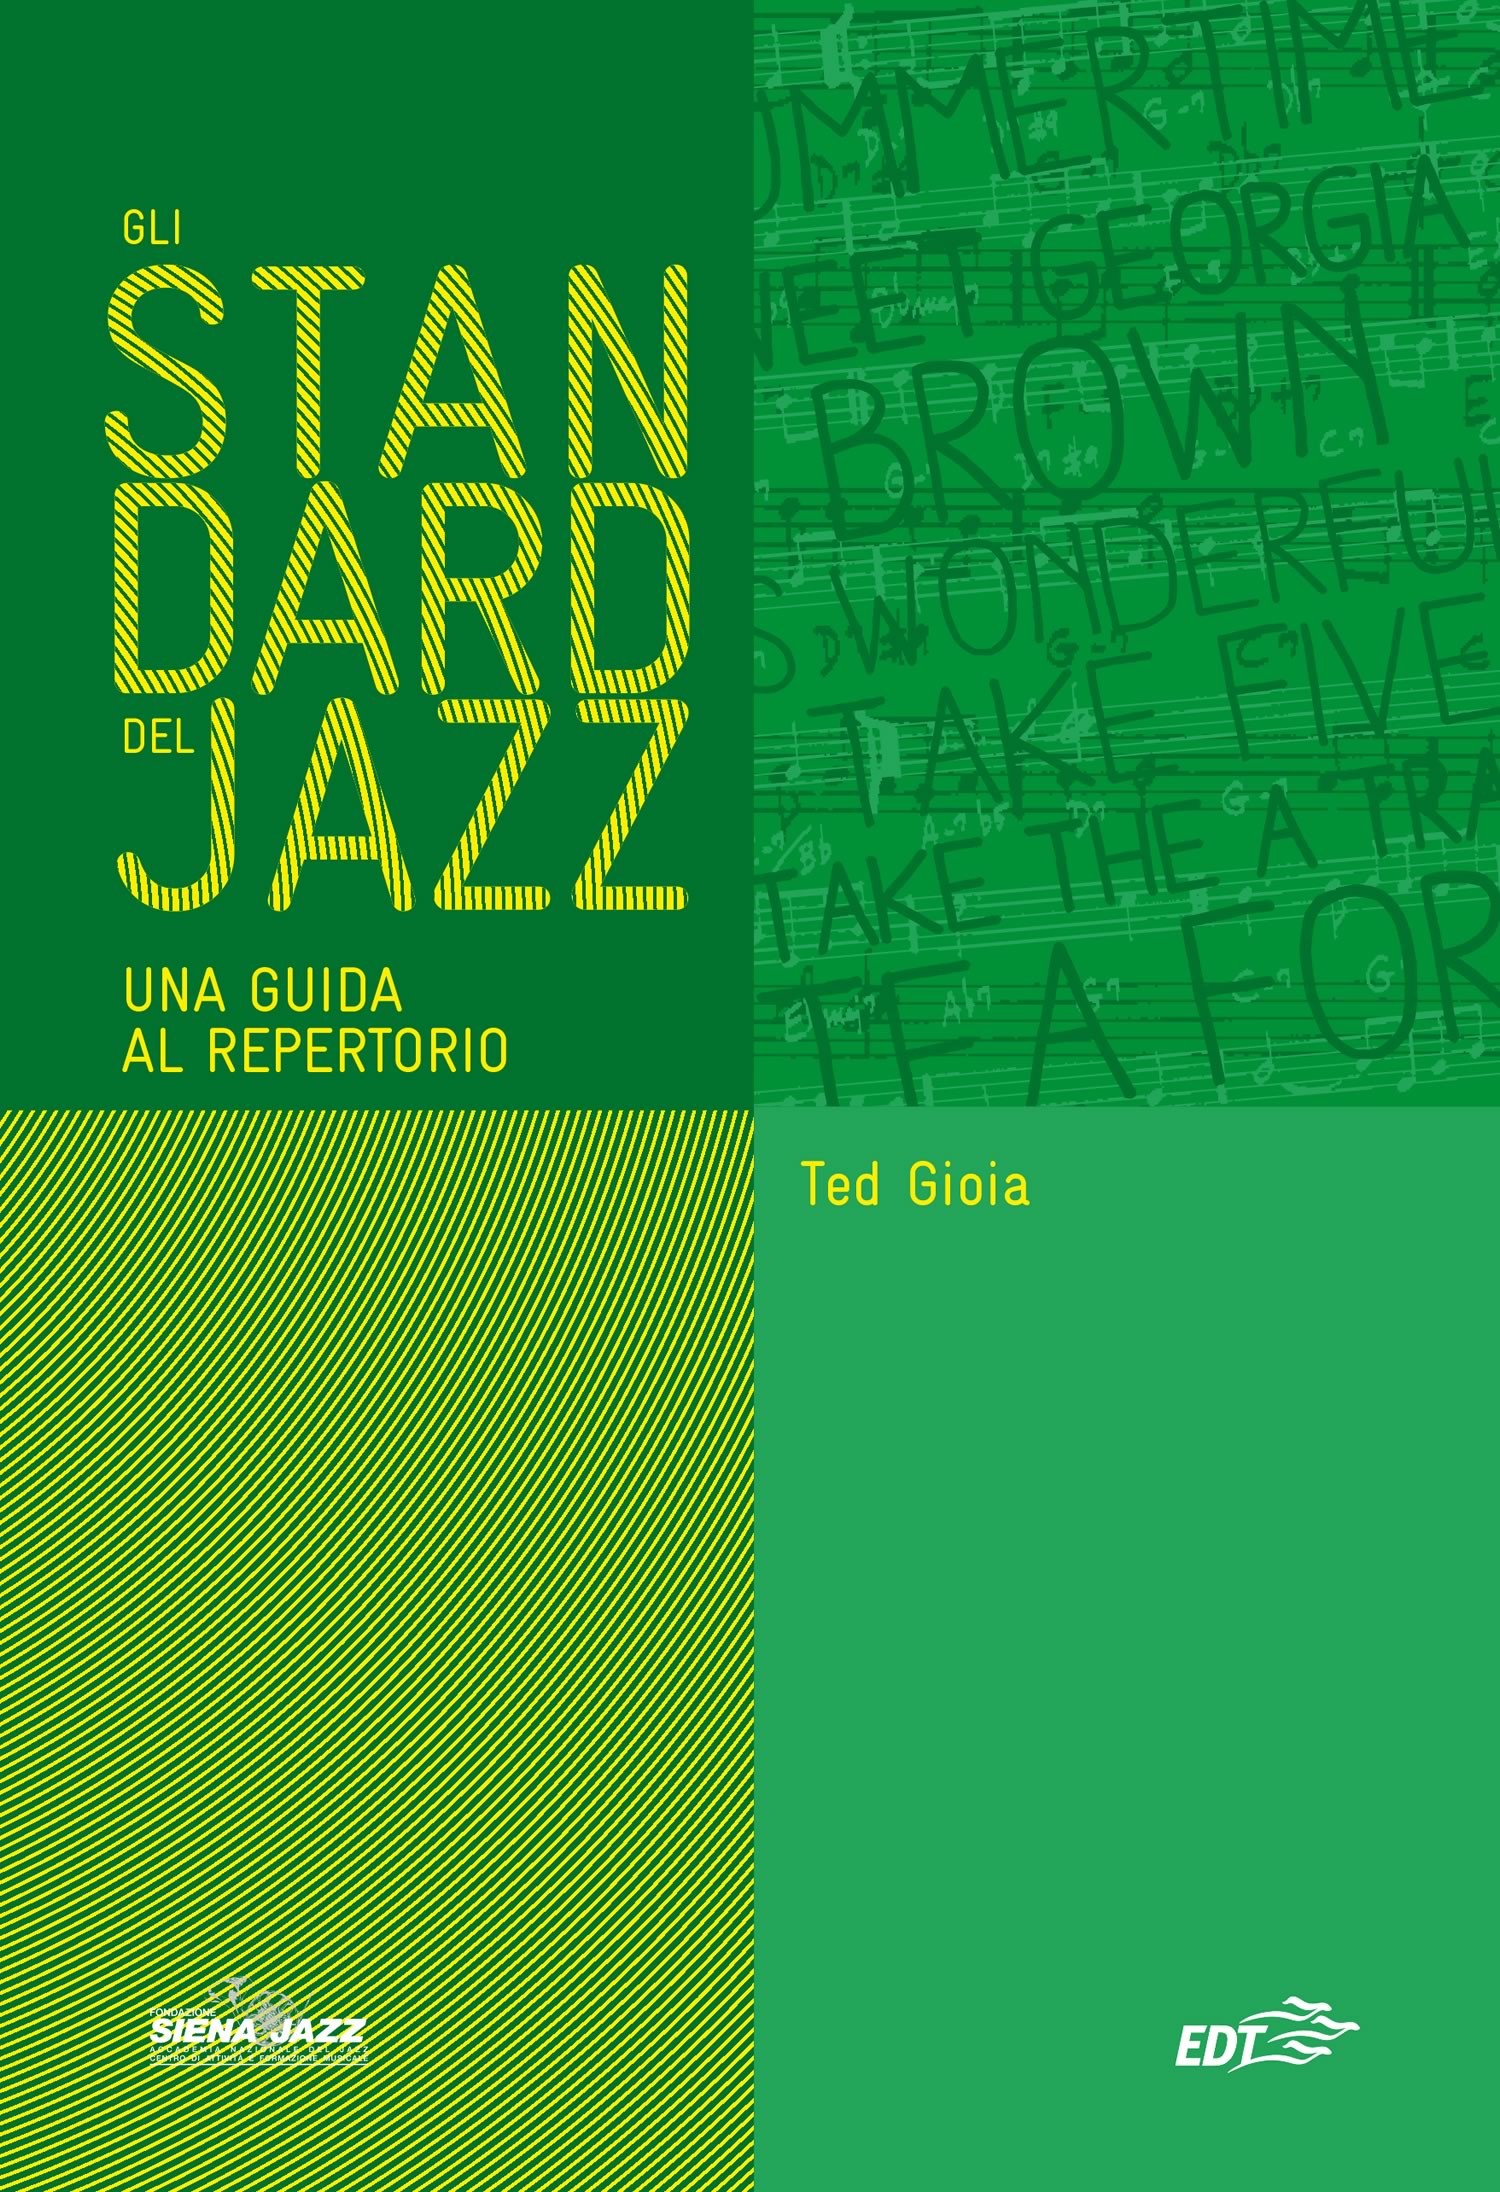 Gli standard del jazz - Librerie.coop